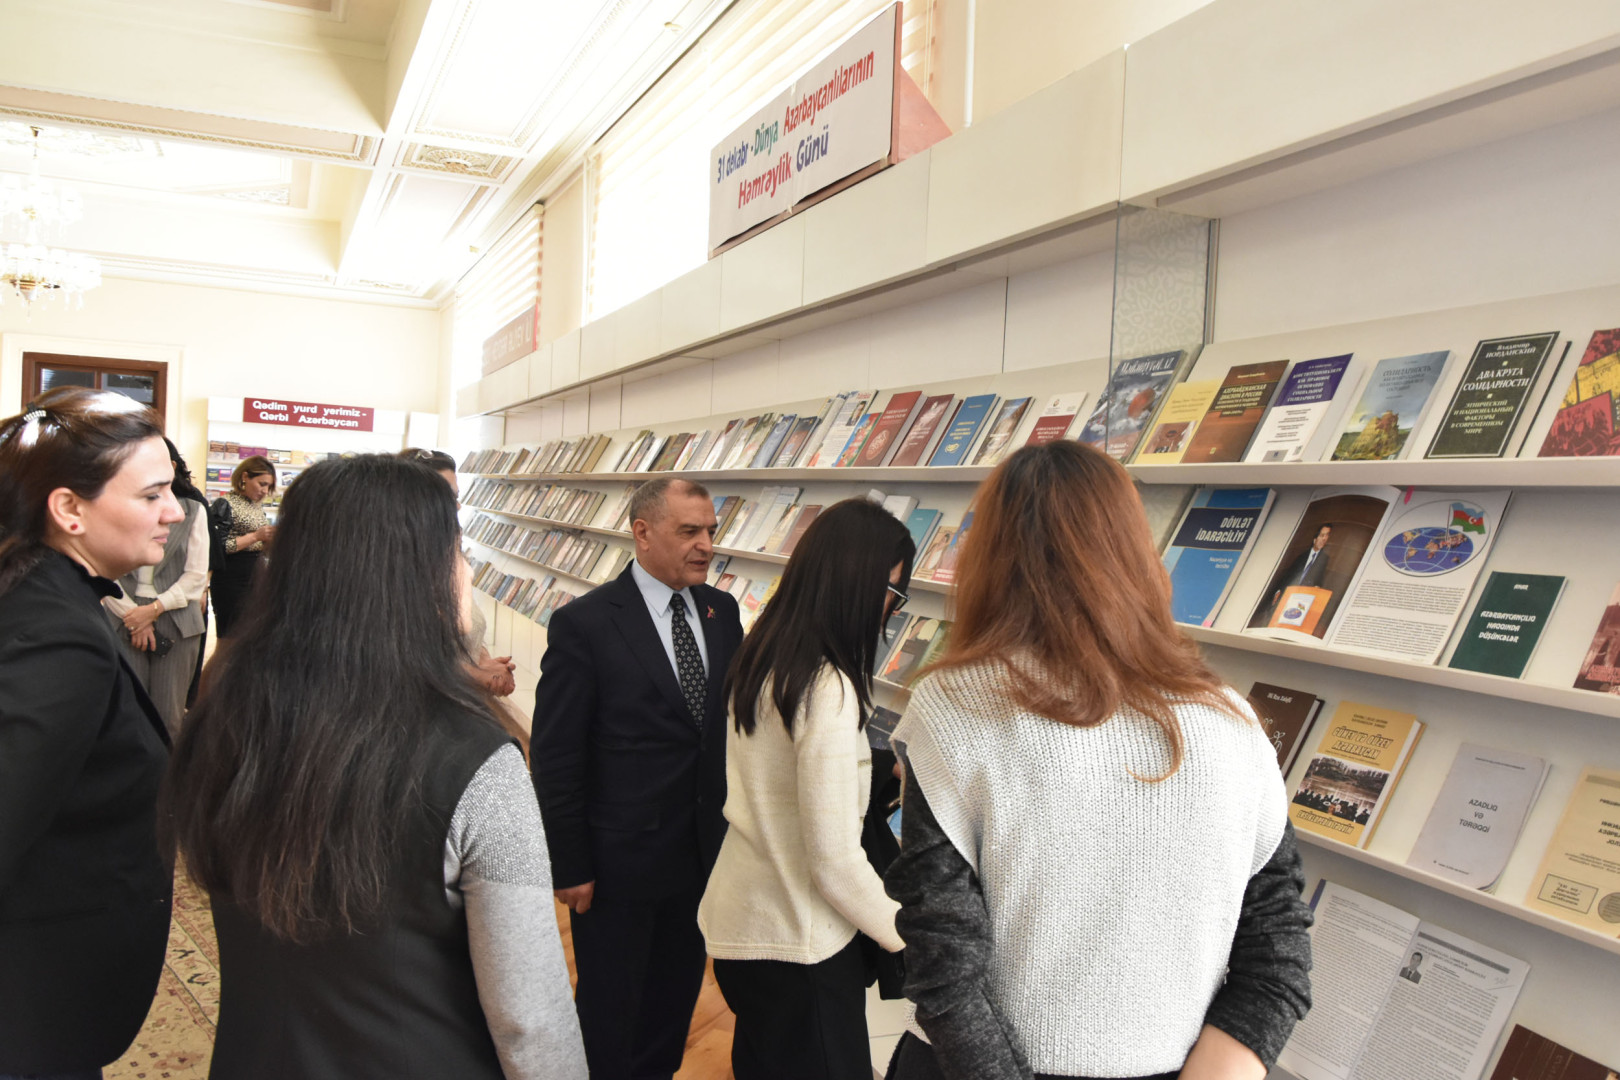 Milli Kitabxanada 31 dekabr – Dünya Azərbaycanlılarının Həmrəylik Günü ilə bağlı tədbir keçirilib